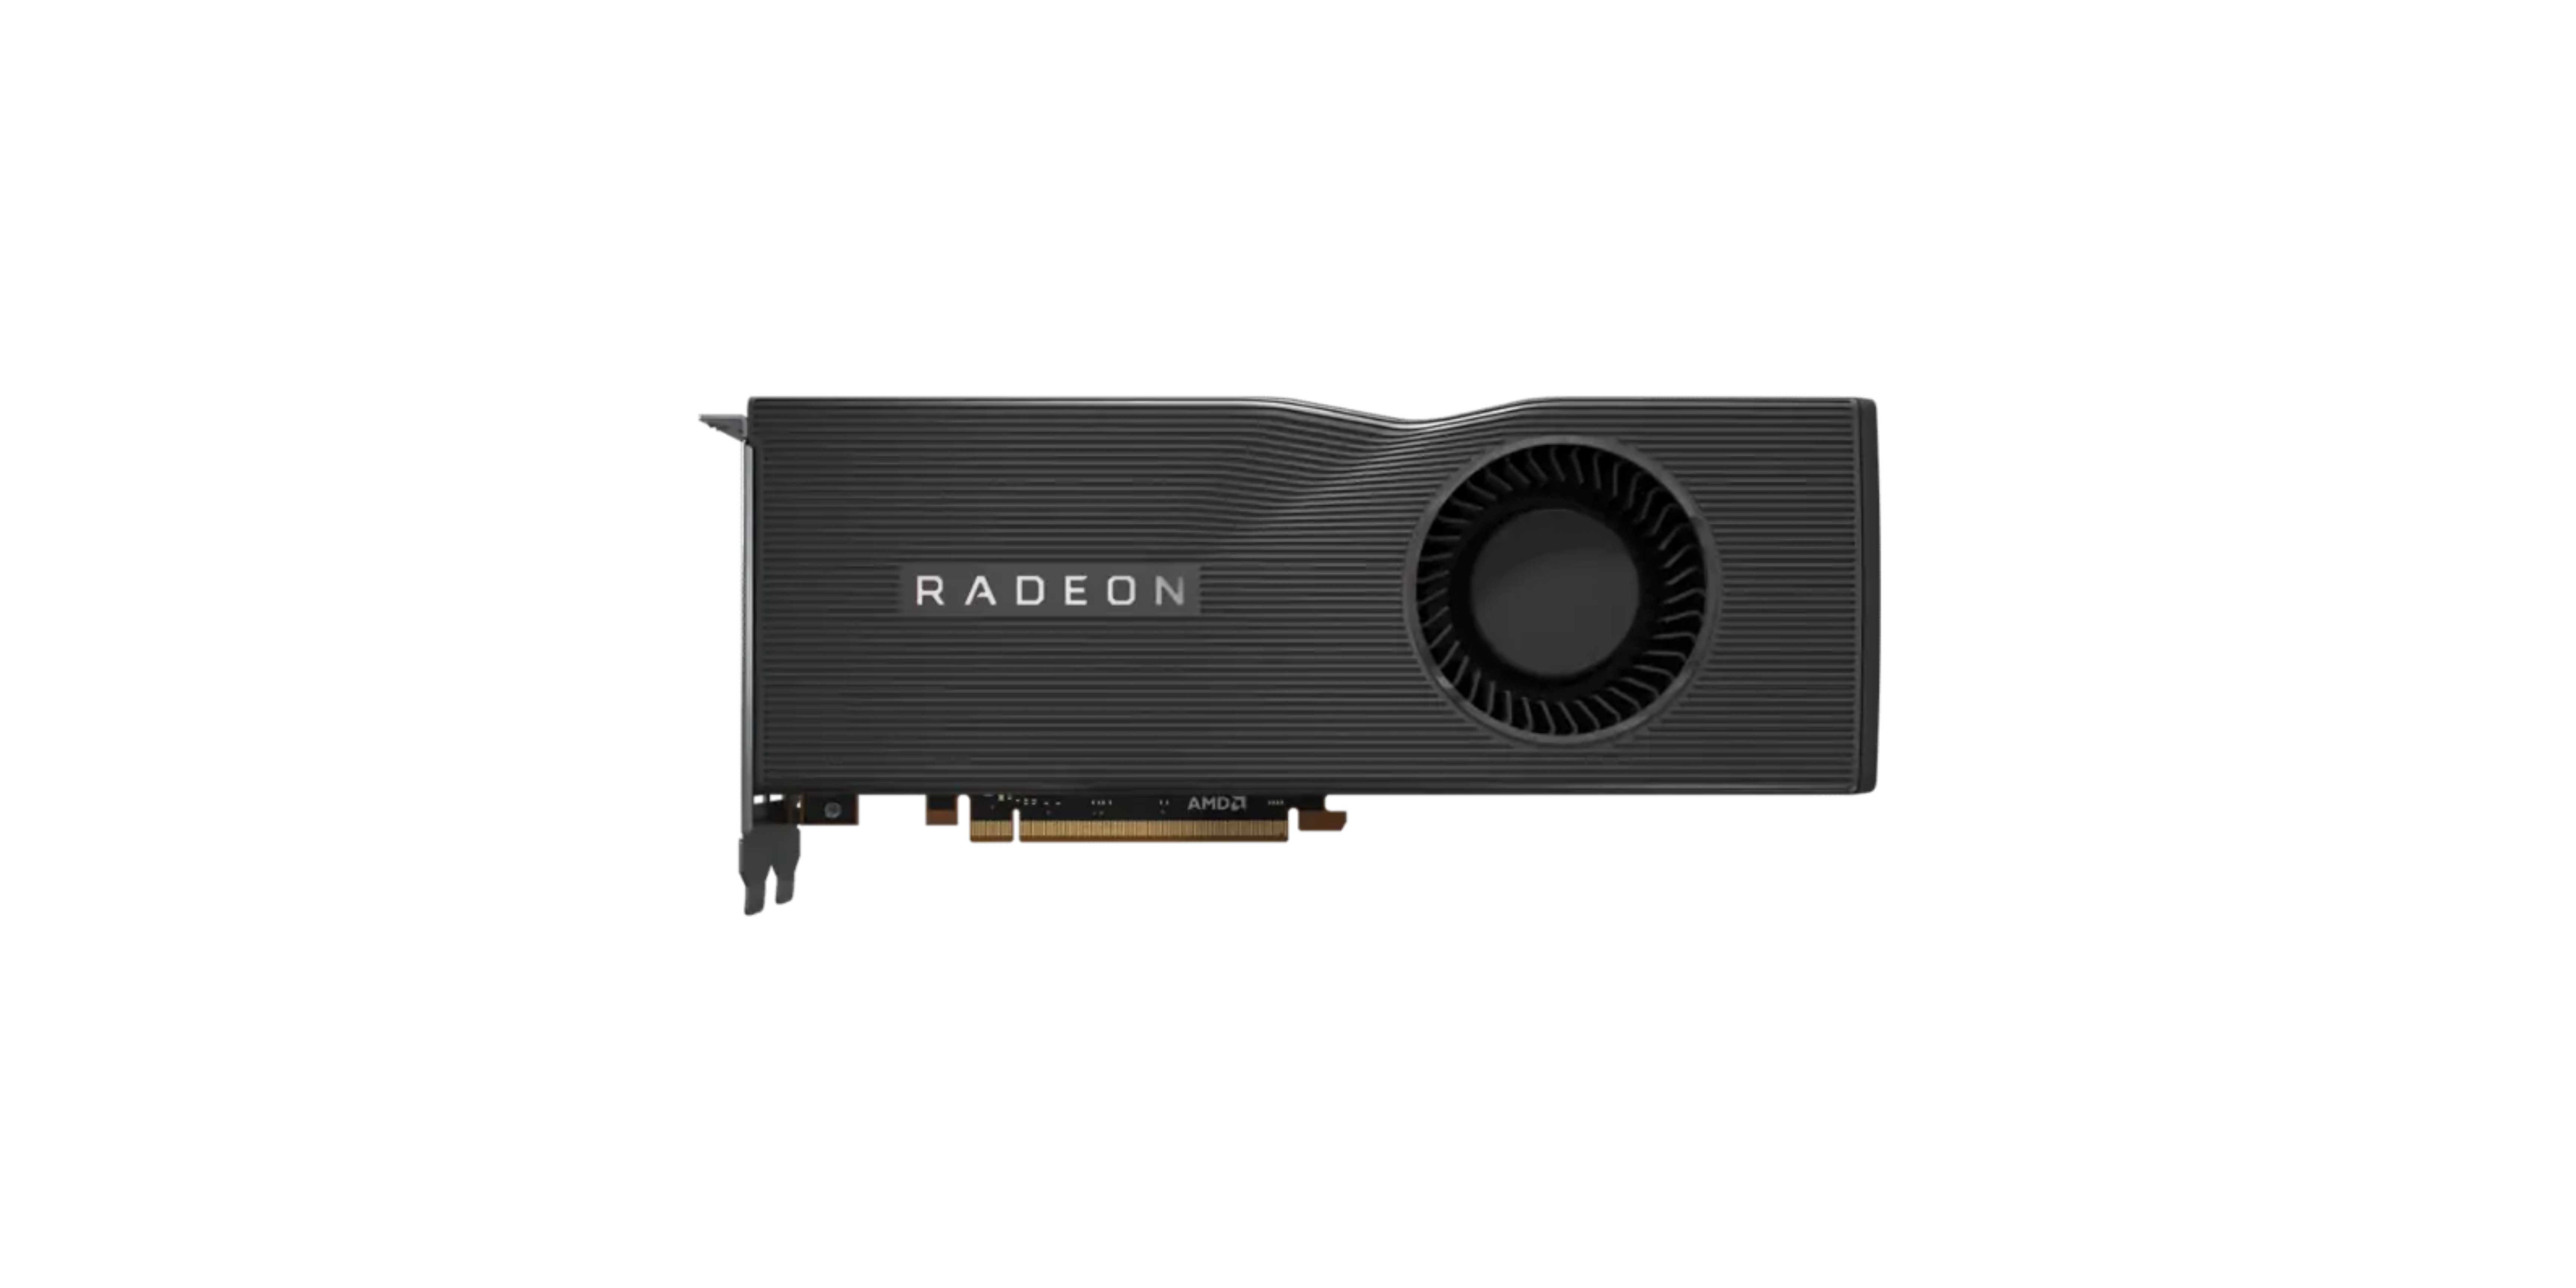 AMD Radeon RX 5700 XT, gpu that looks like a projector